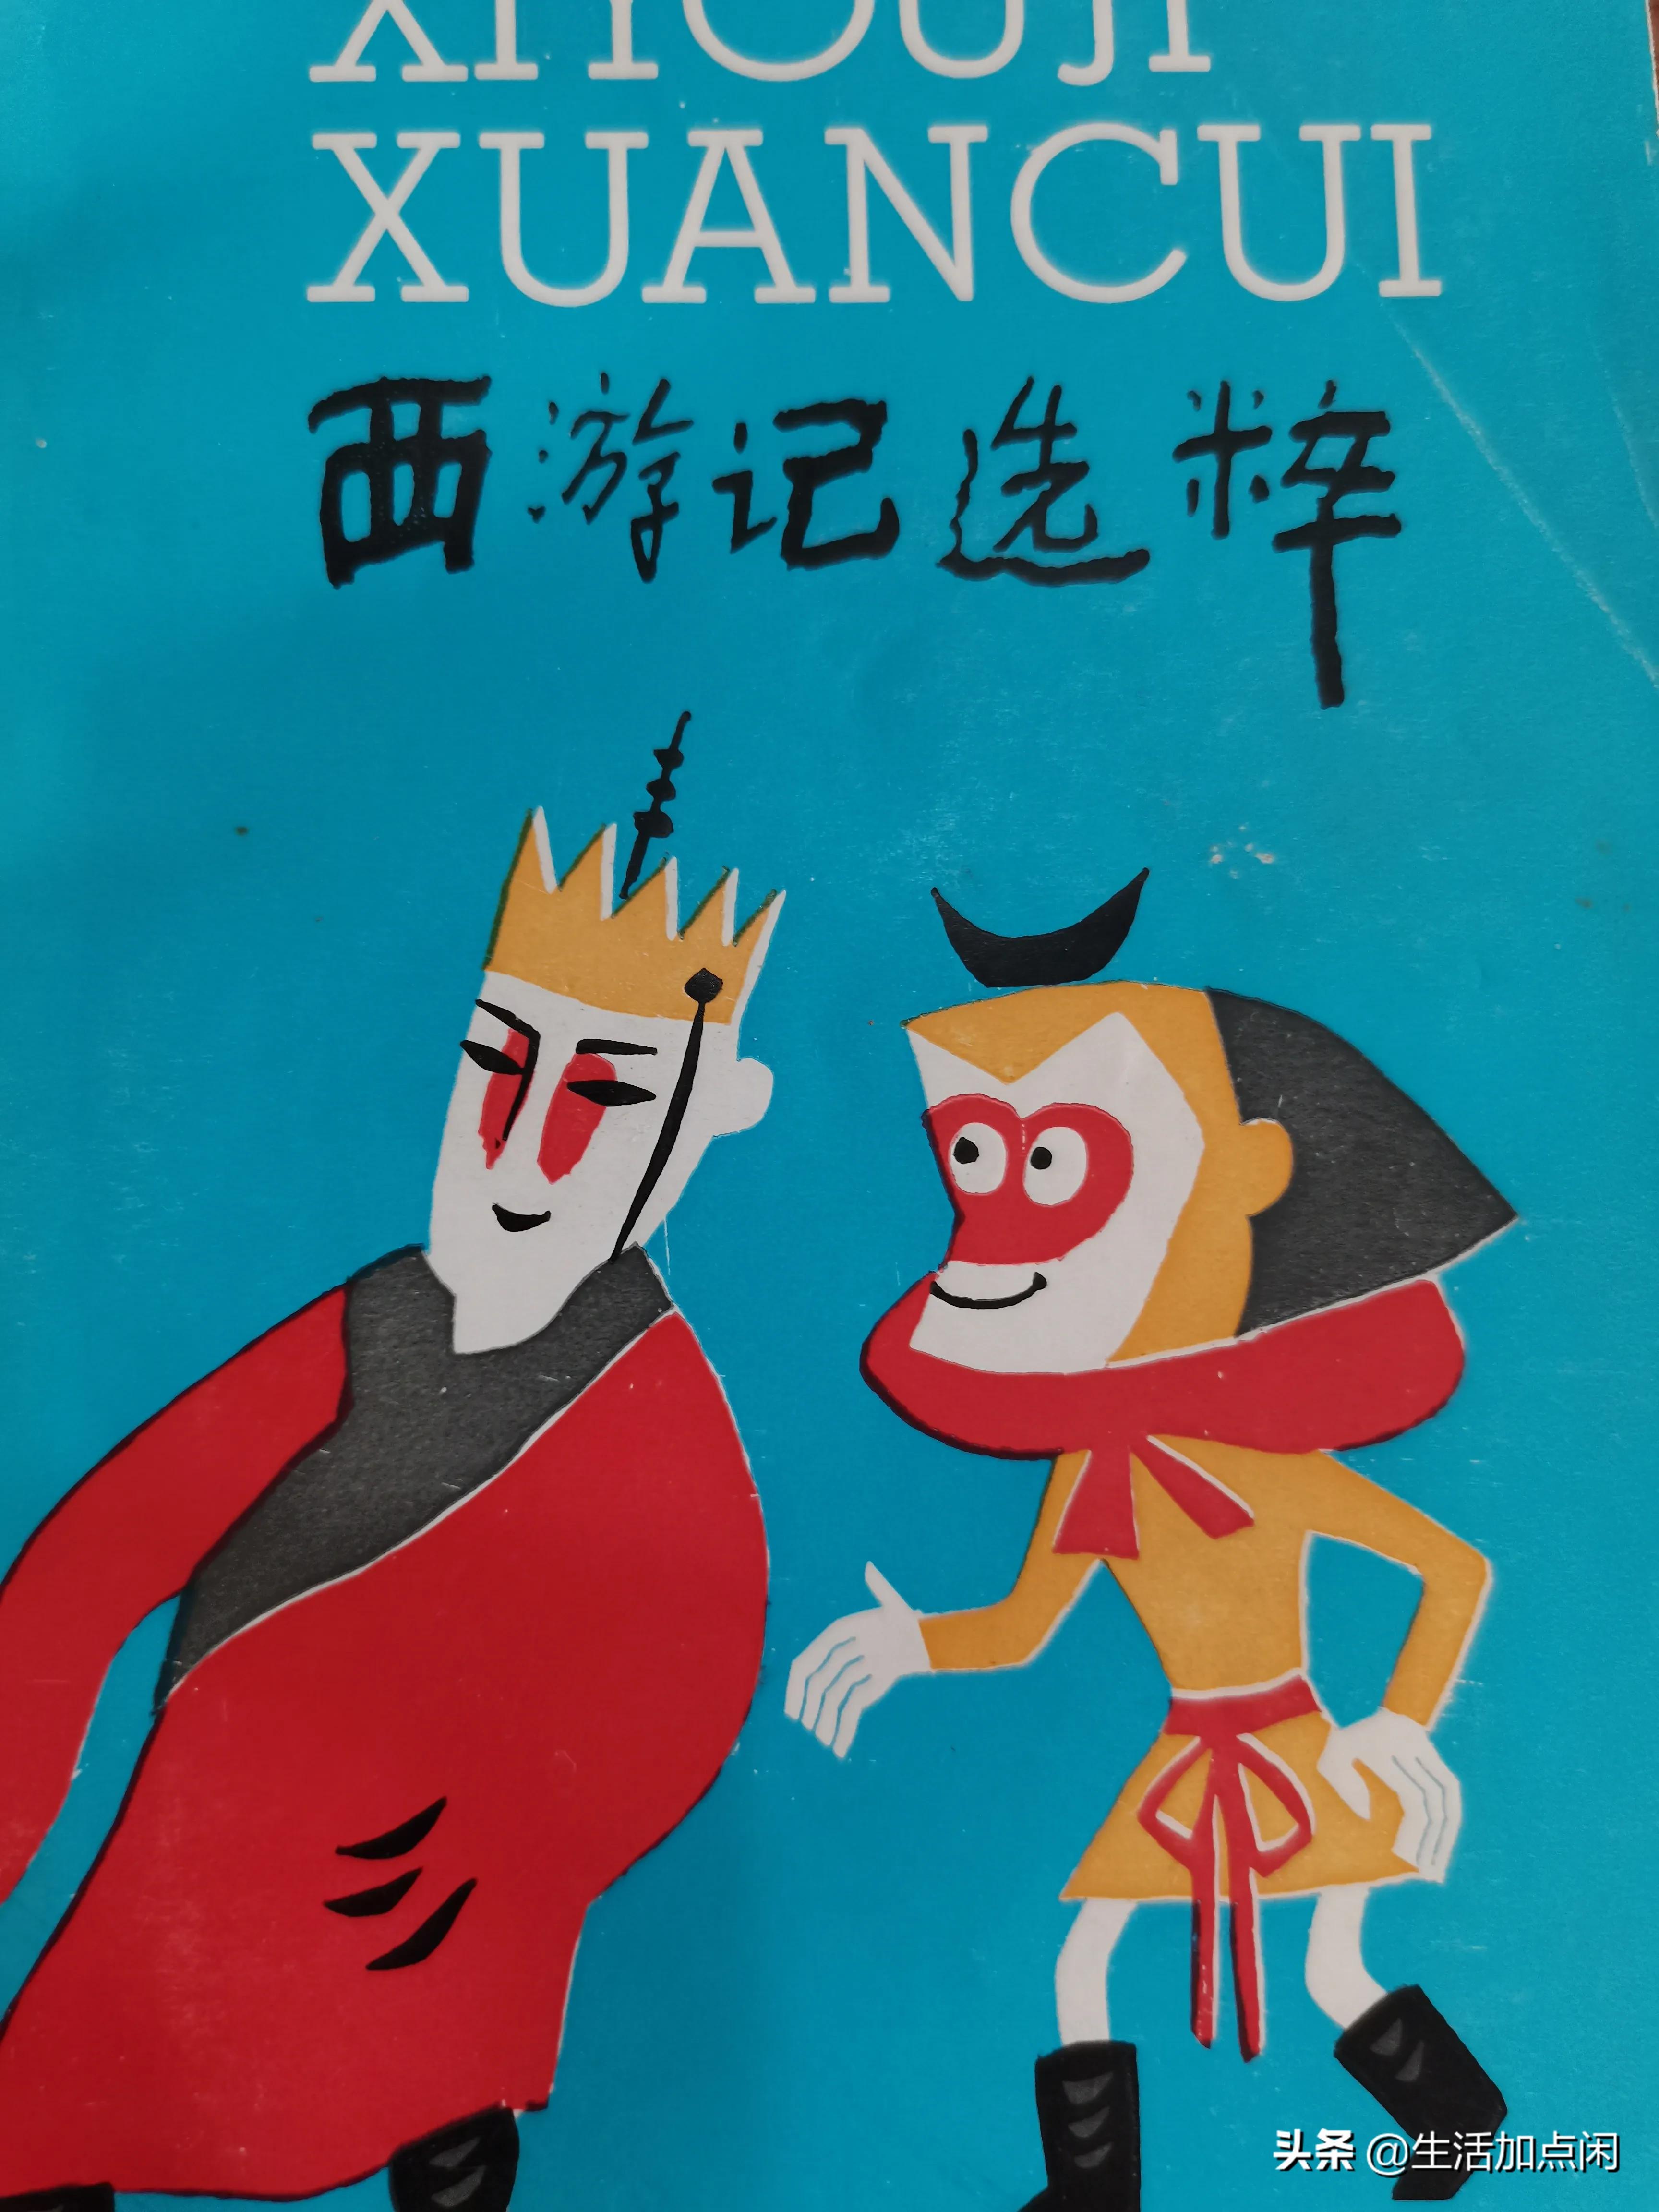 《西游记选粹》上海教育出版社，1986